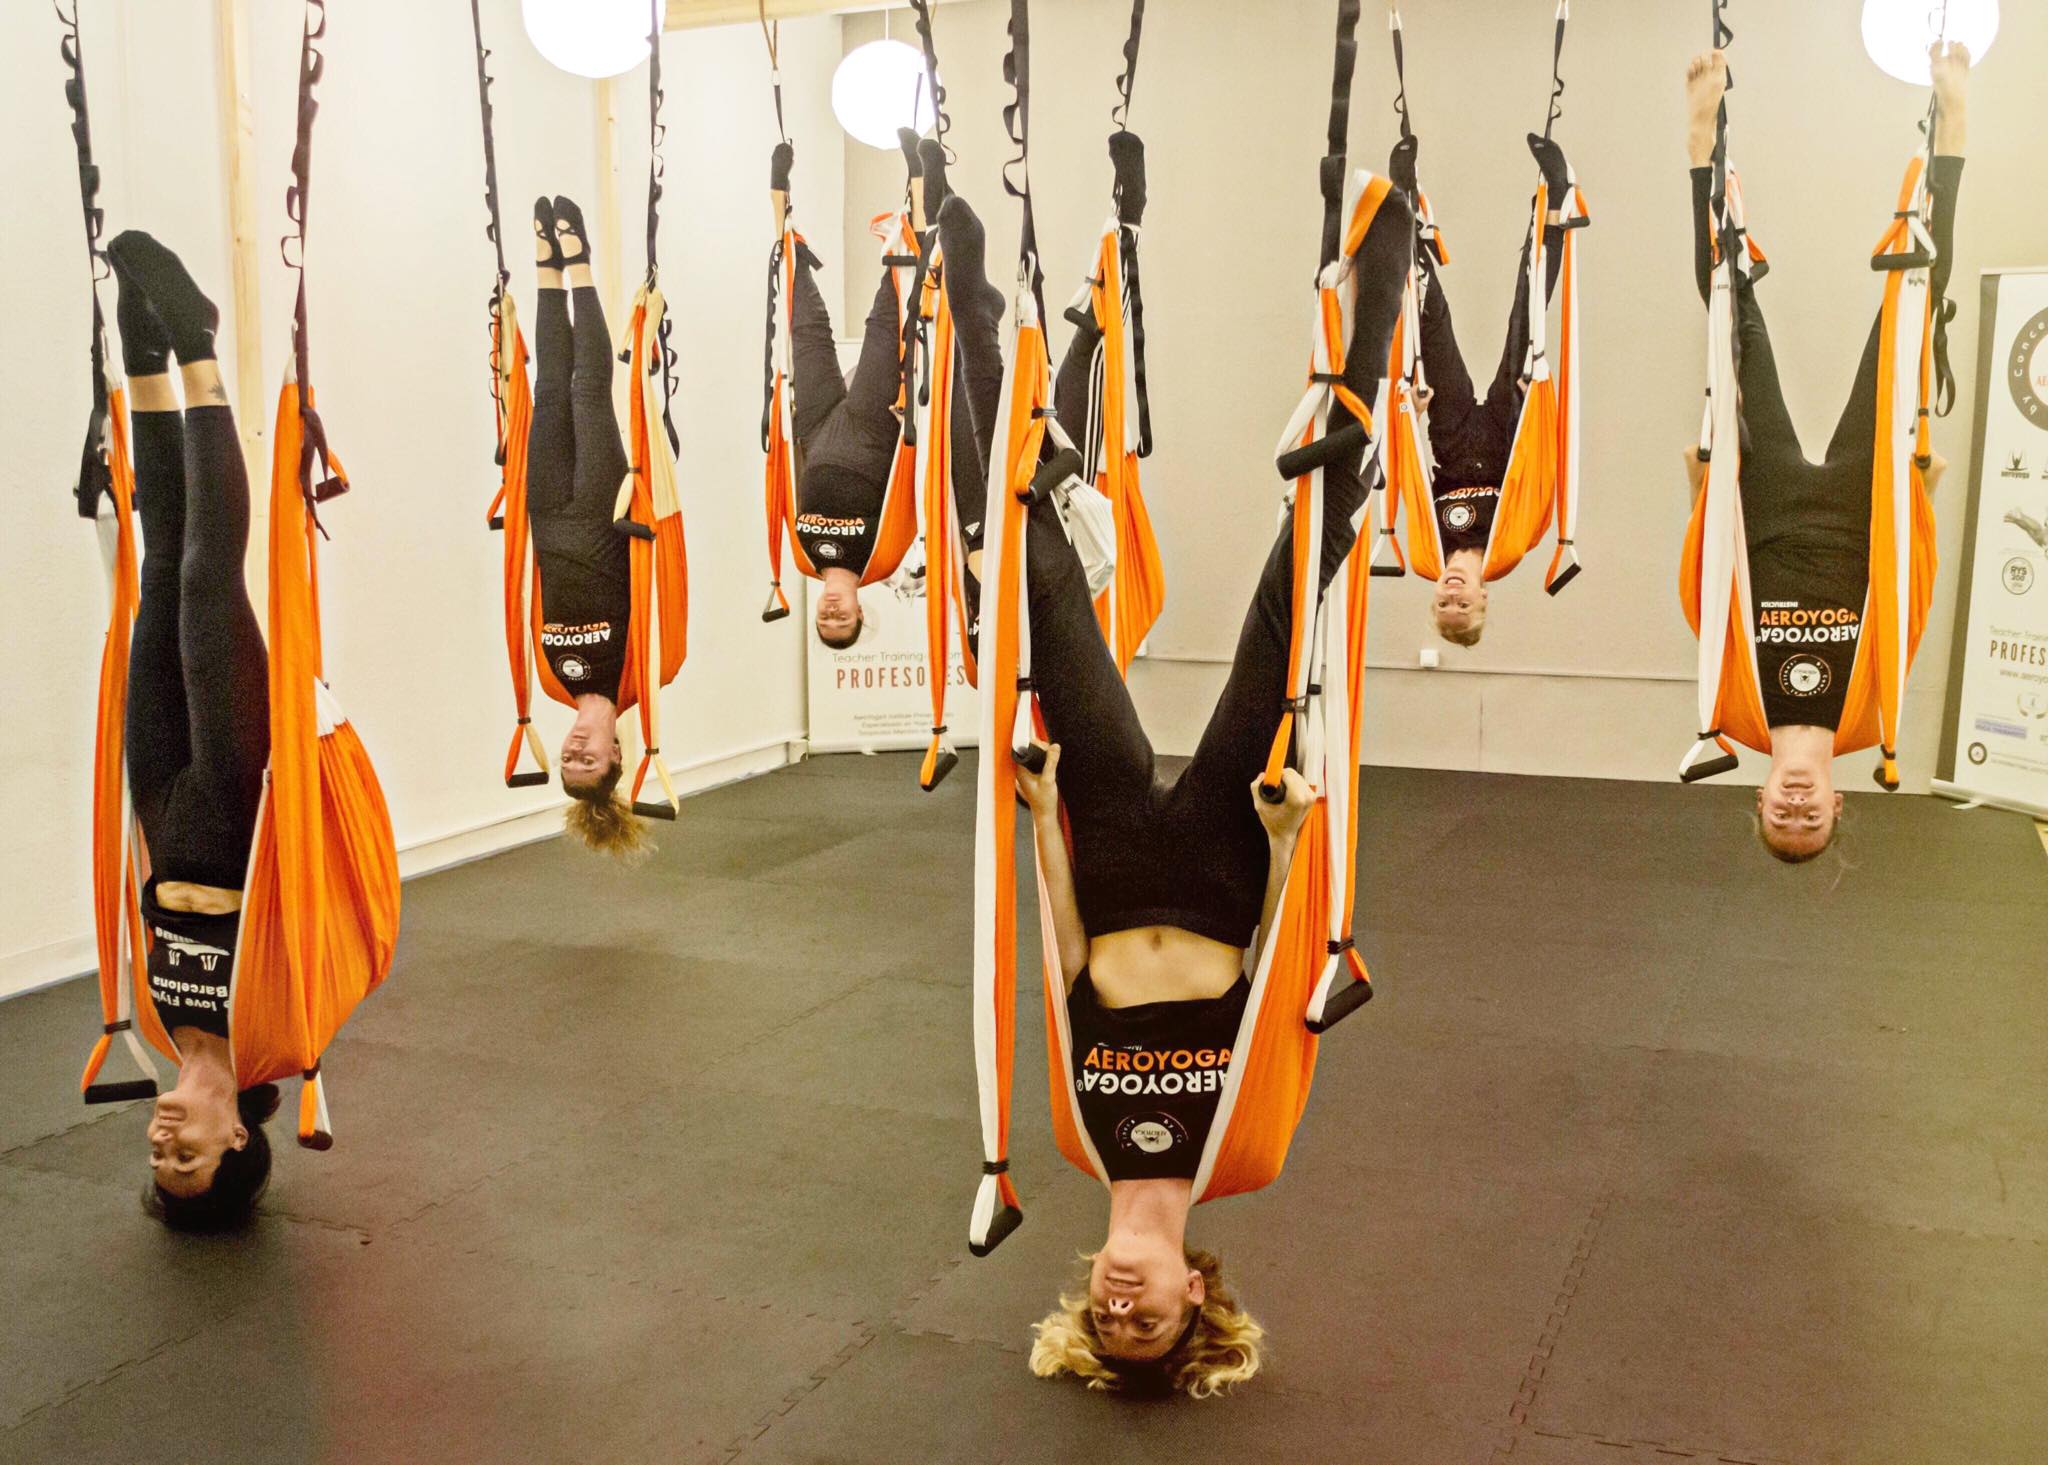 yogacreativo.com: Formación Yoga Aéreo, Descubre el Nuevo Columpio AeroYoga  ® para el Curso 2019/20